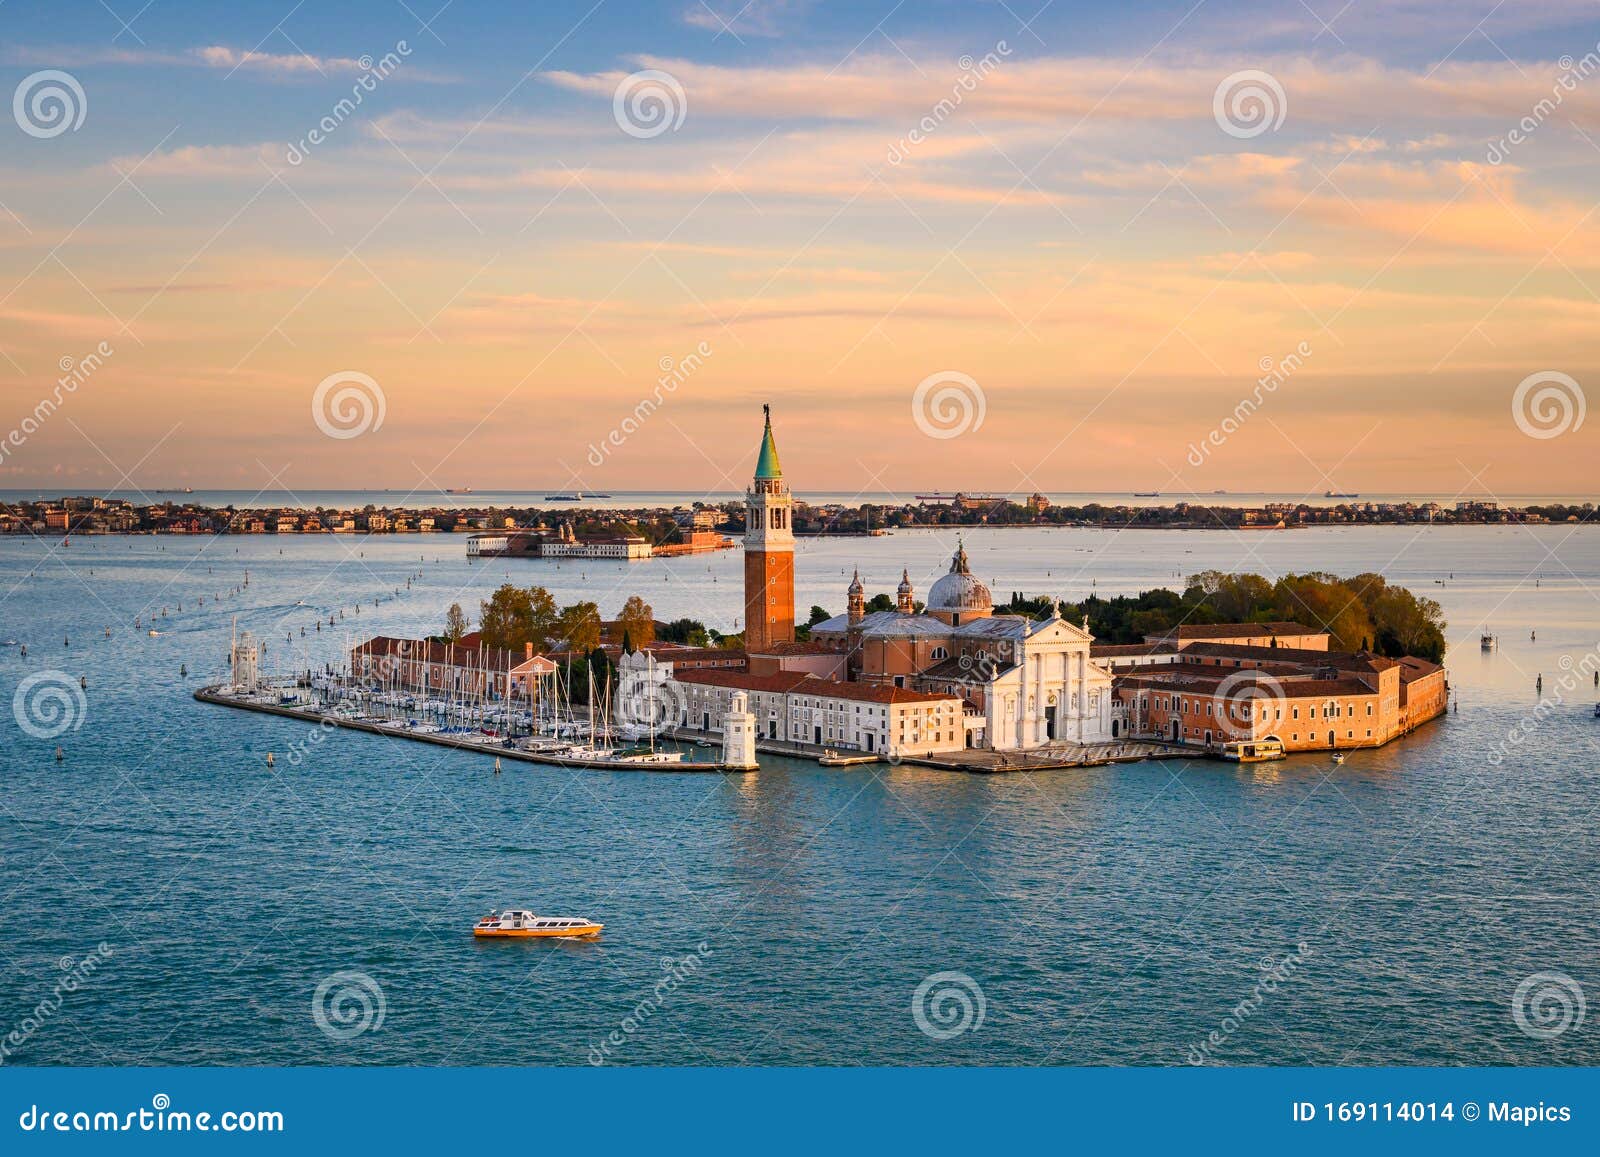 San Giorgio Maggiore Island in Venice, Italy Stock Photo - Image of ...